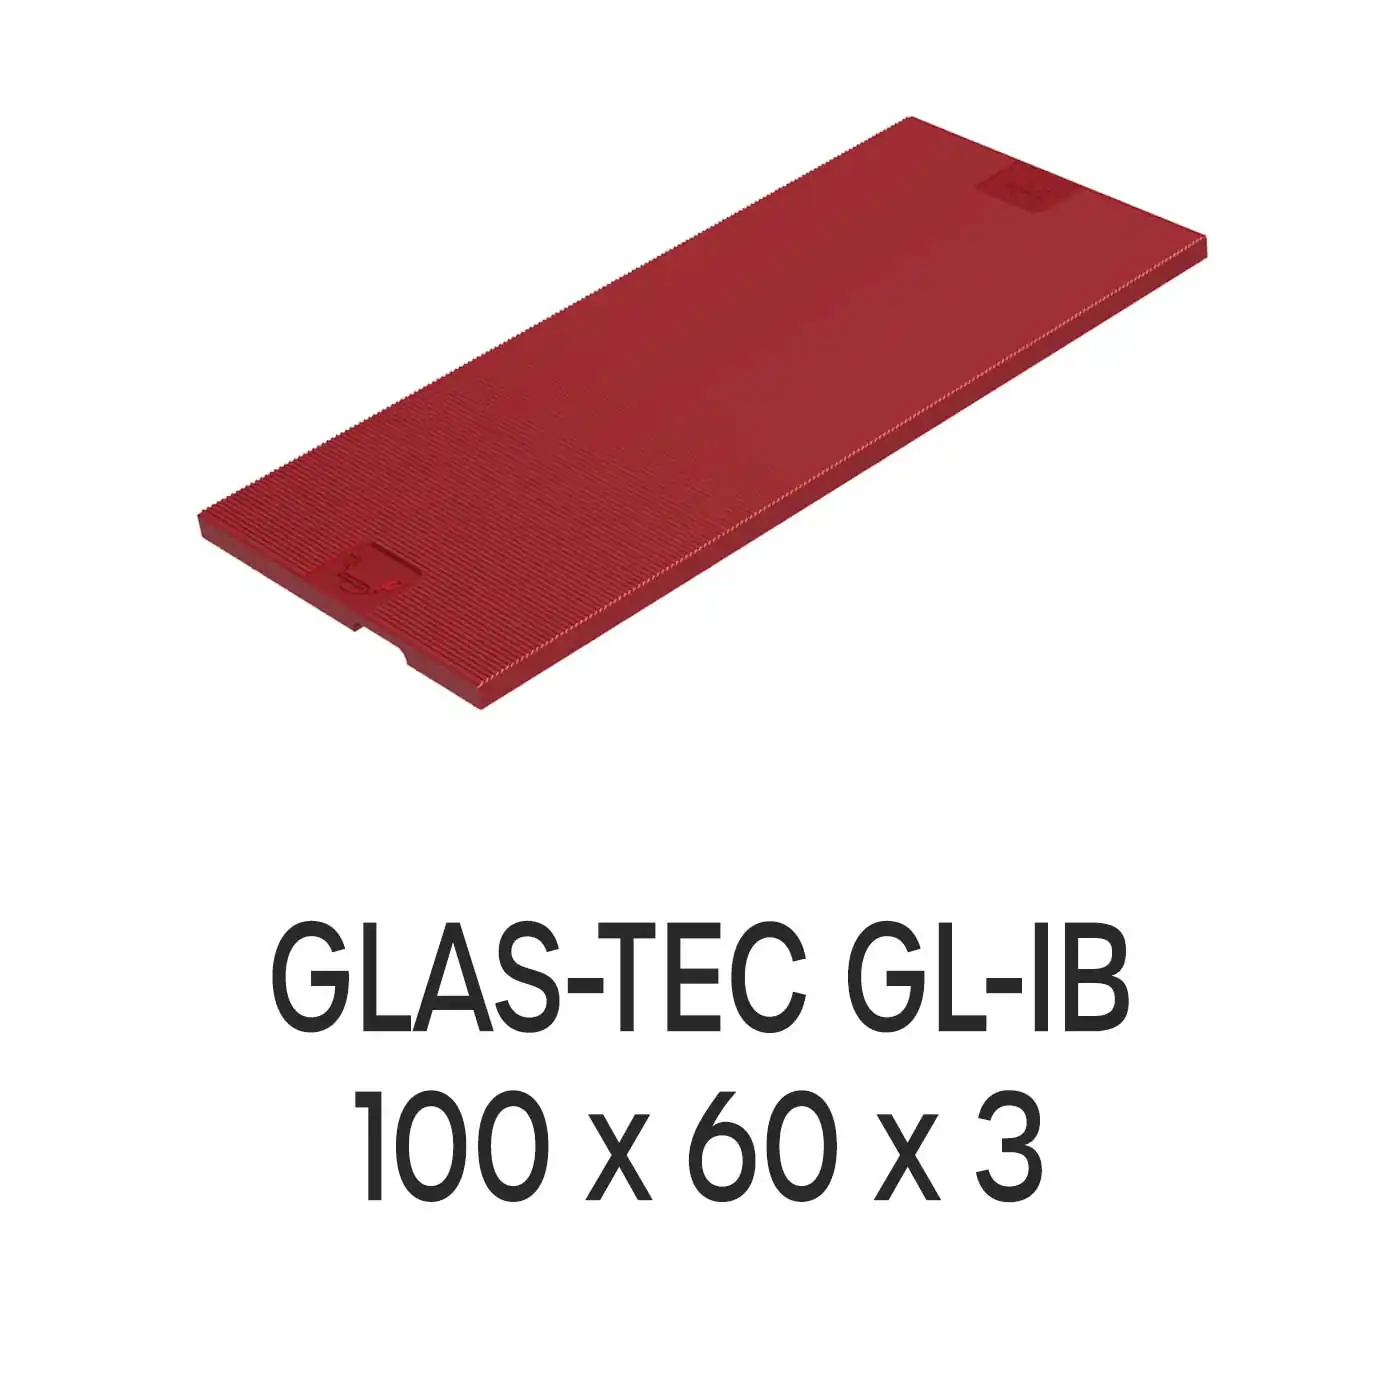 Roto Verglasungsklotz GLAS-TEC GL-IB, 100 x 60 x 3 mm, schwarz, 500 Stück